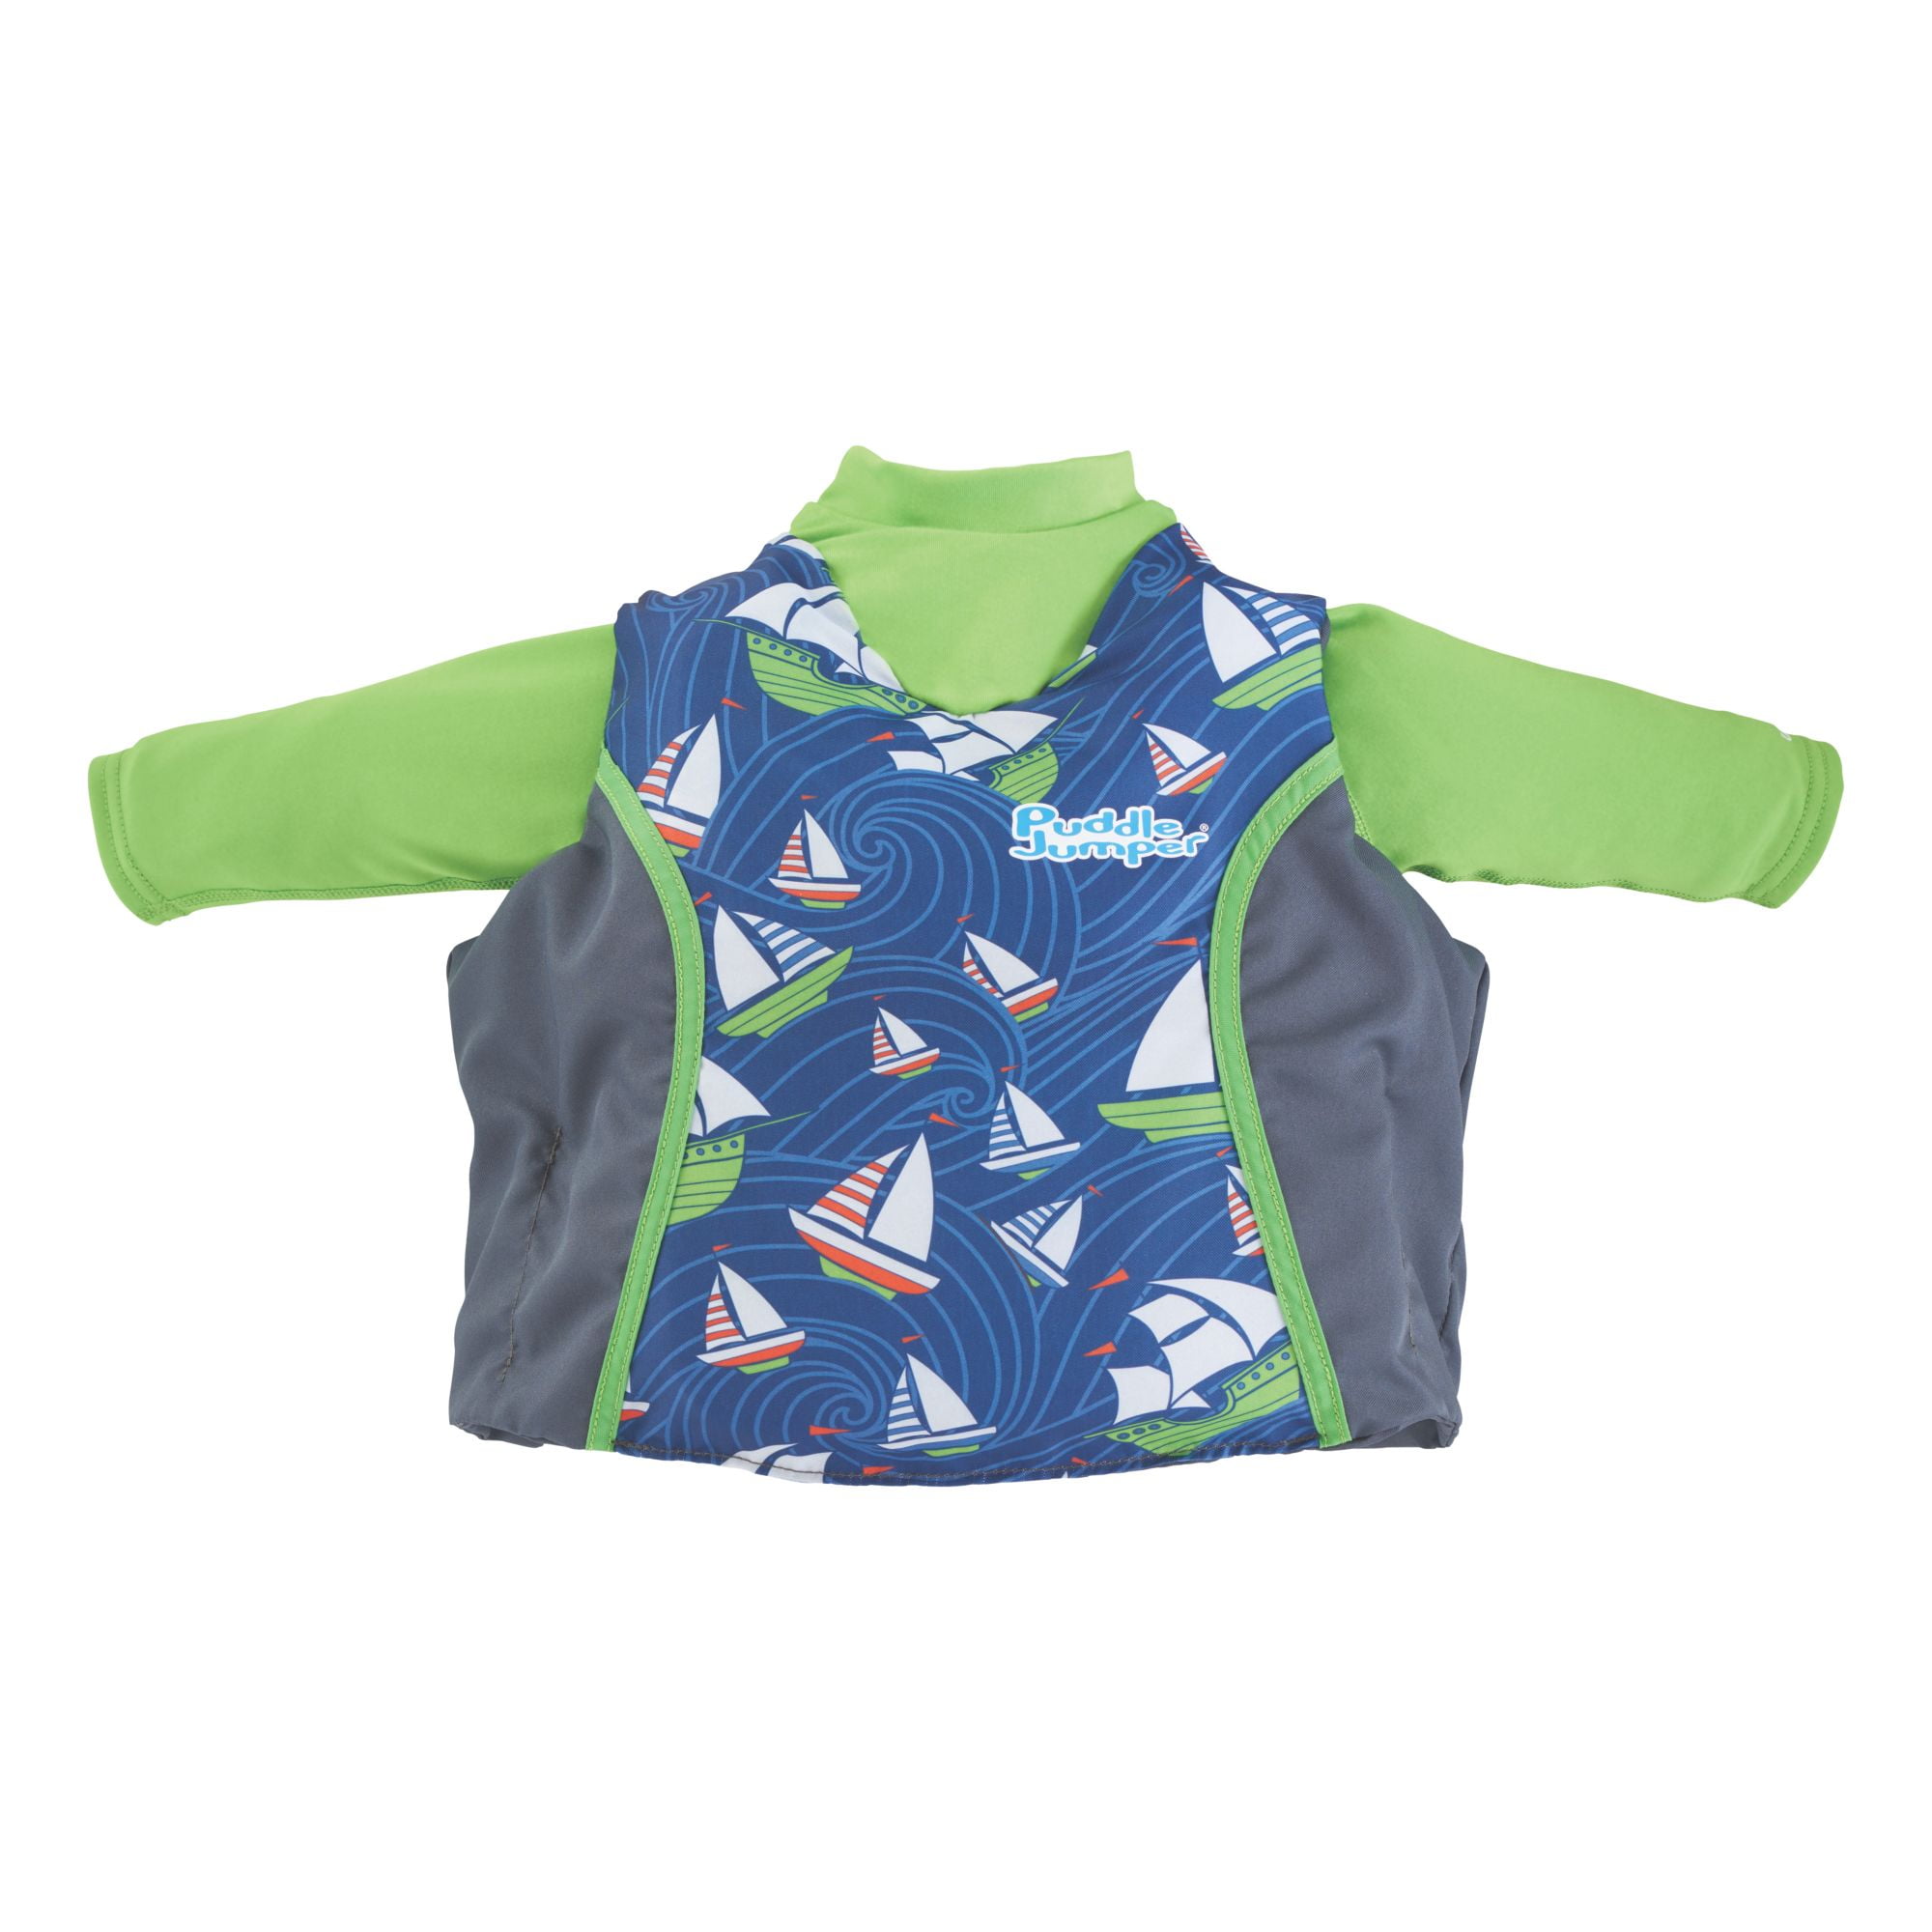 Coleman Puddle Jumper Kids Life Jacket Preserver Vest Mermaids UPF 50 PFD for sale online 